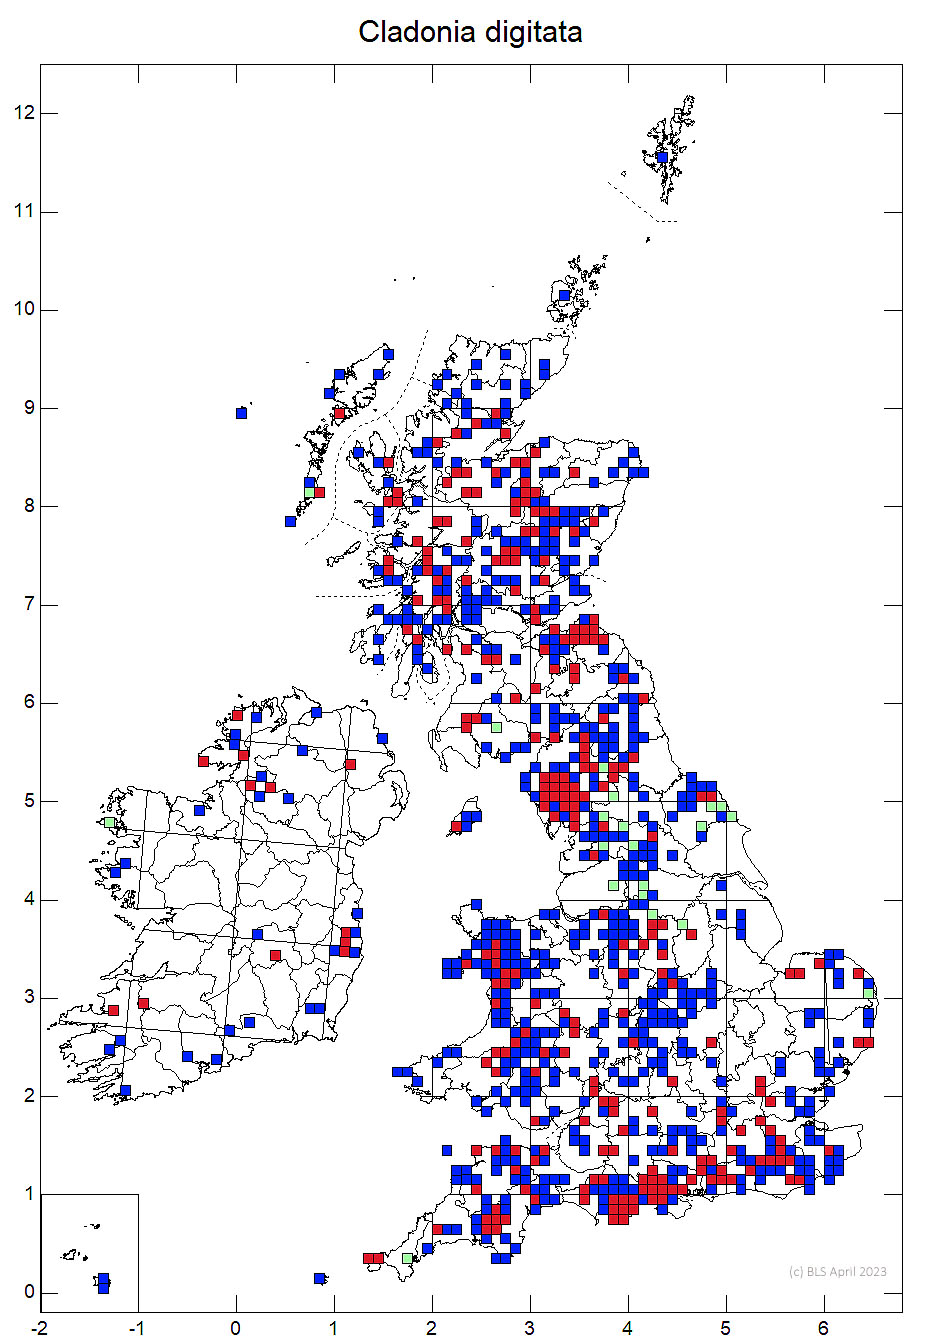 Cladonia digitata 10km sq distribution map